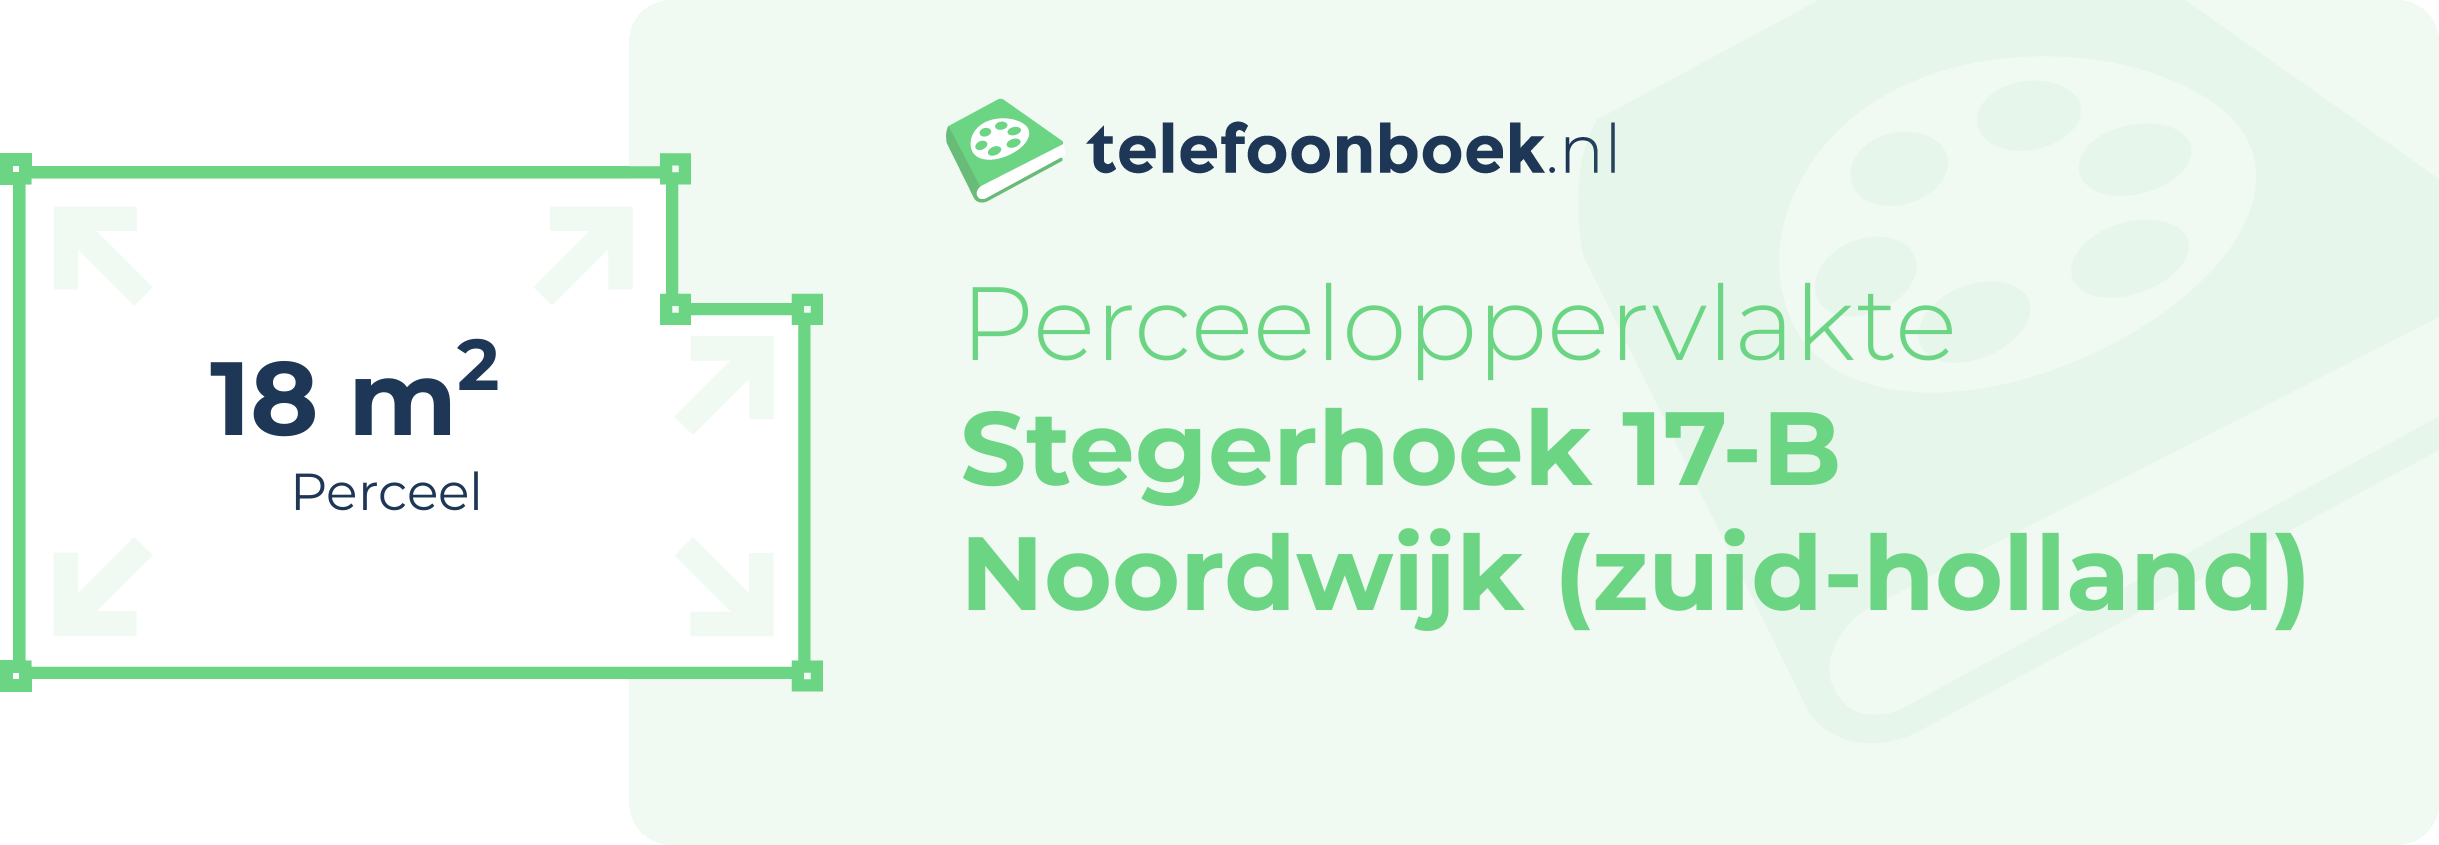 Perceeloppervlakte Stegerhoek 17-B Noordwijk (Zuid-Holland)